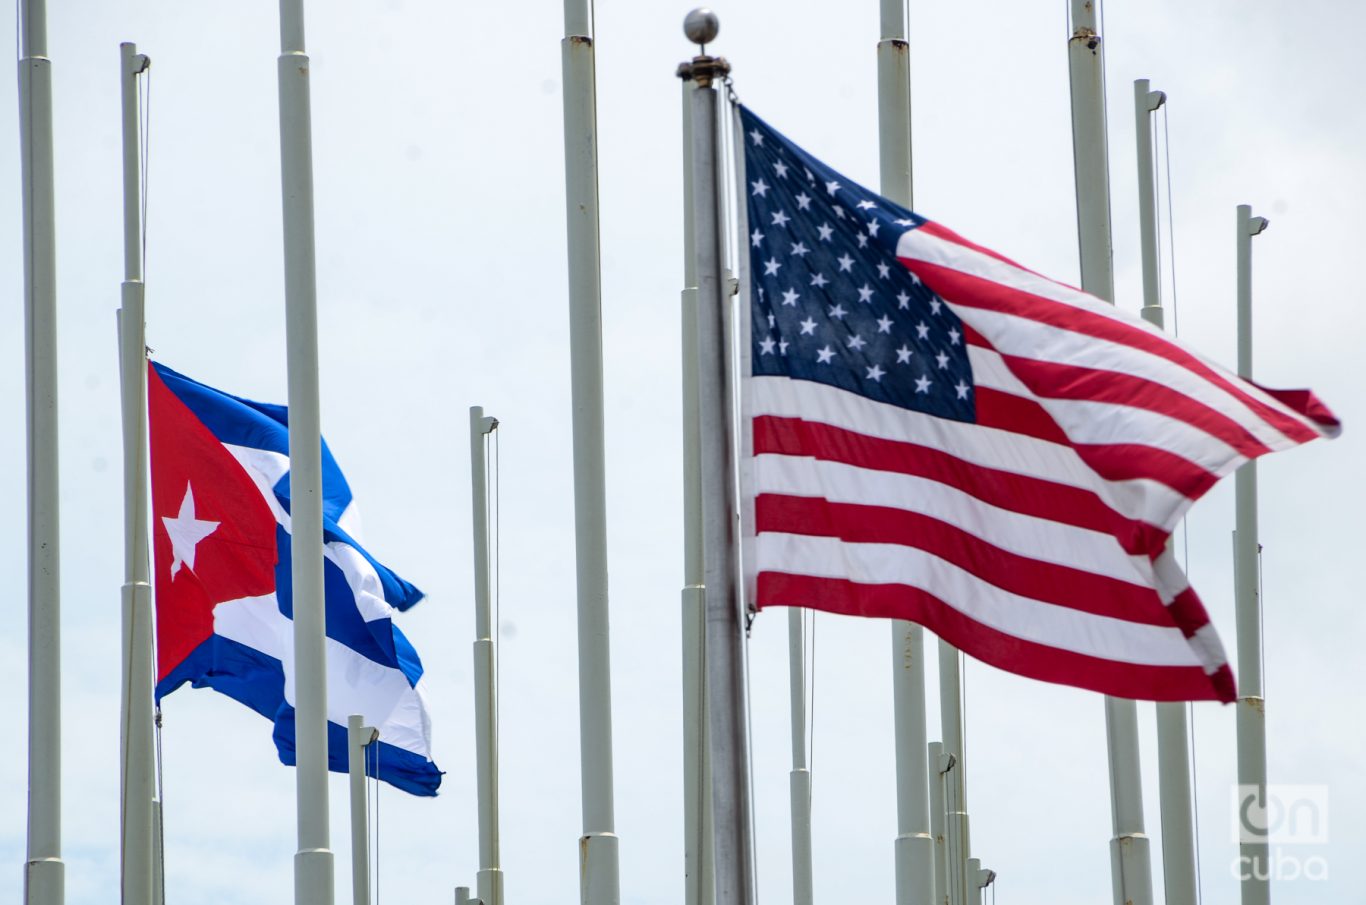 Las banderas de Estados Unidos en la Embajada y de Cuba en la Tribuna Antimperialista. Foto: Kaloian.
